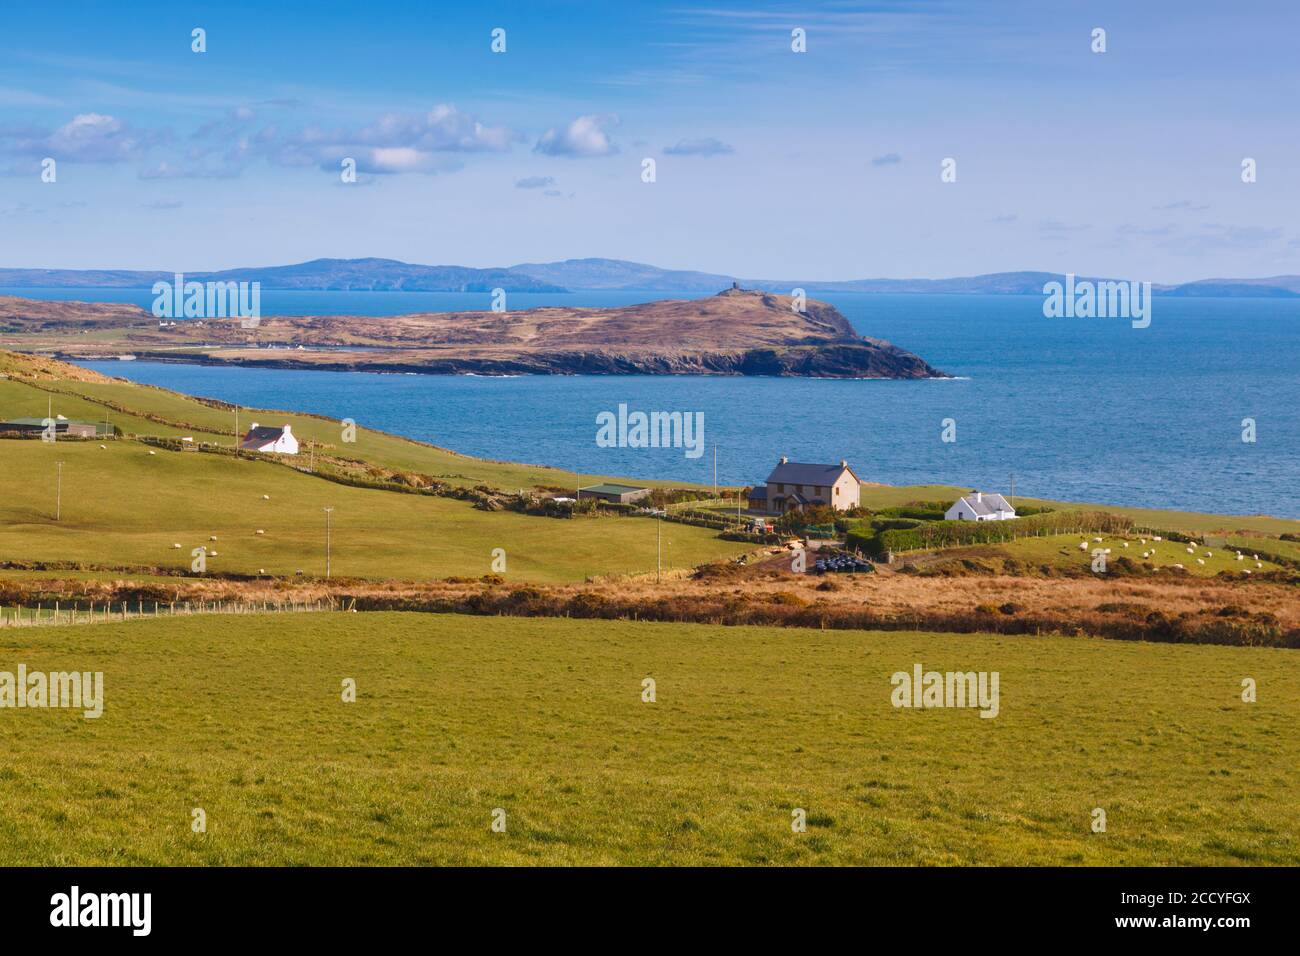 Typische Landschaft in der Nähe von Lehanmore auf der Halbinsel Beare, dem Ring of Beare, Grafschaft Cork, West Cork, Republik Irland. Irland. Stockfoto